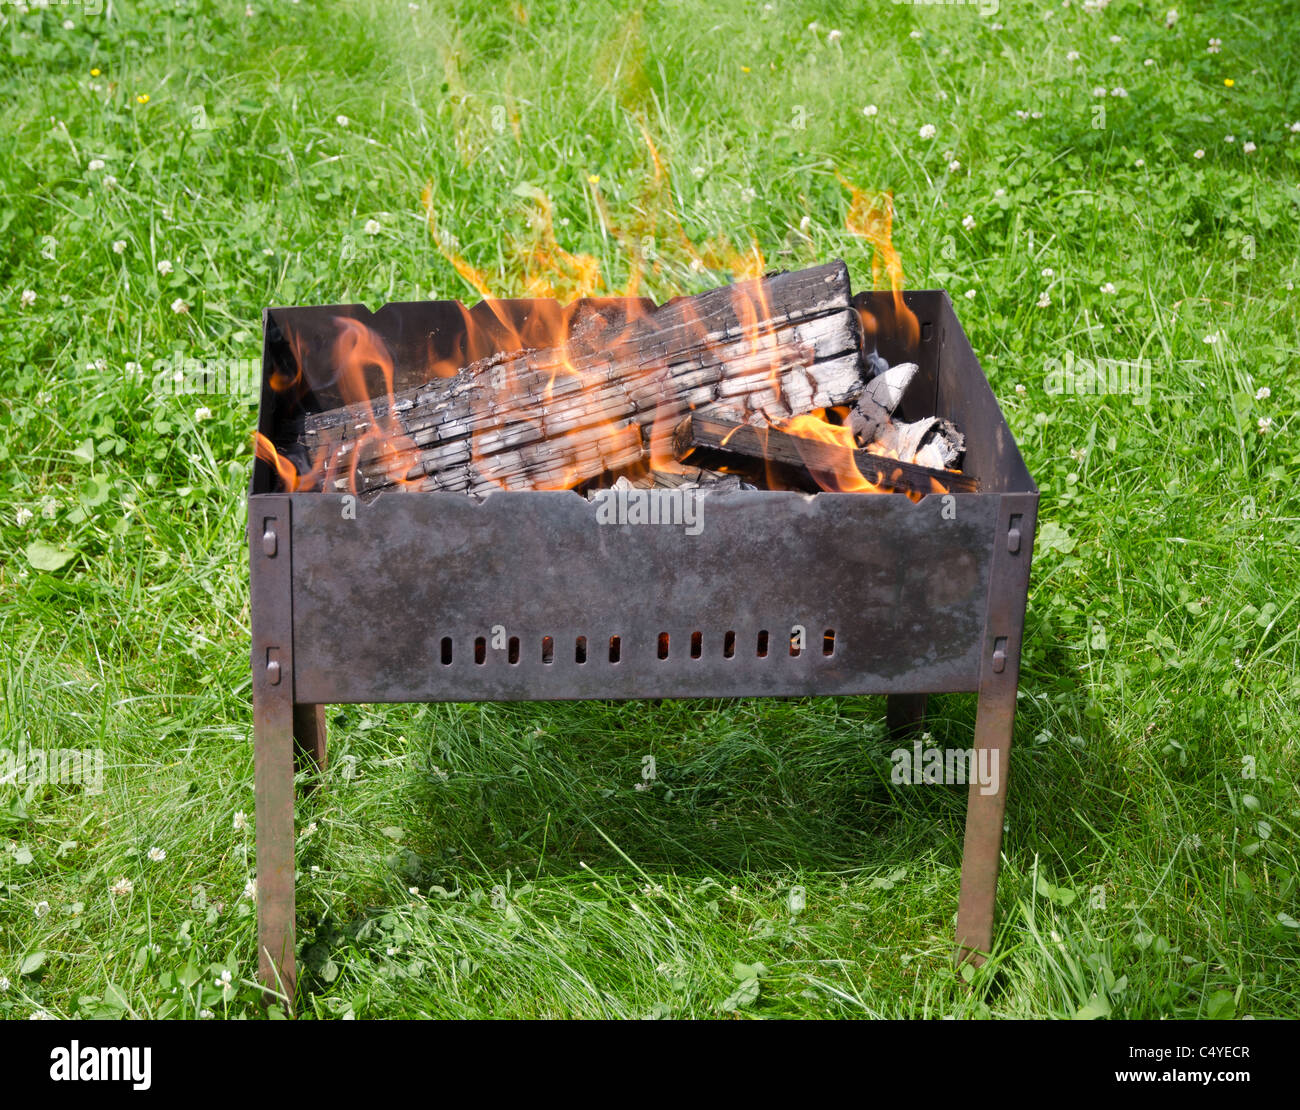 Vue rapprochée de l'incendie dans les langues sur un barbecue jardin herbe verte Banque D'Images